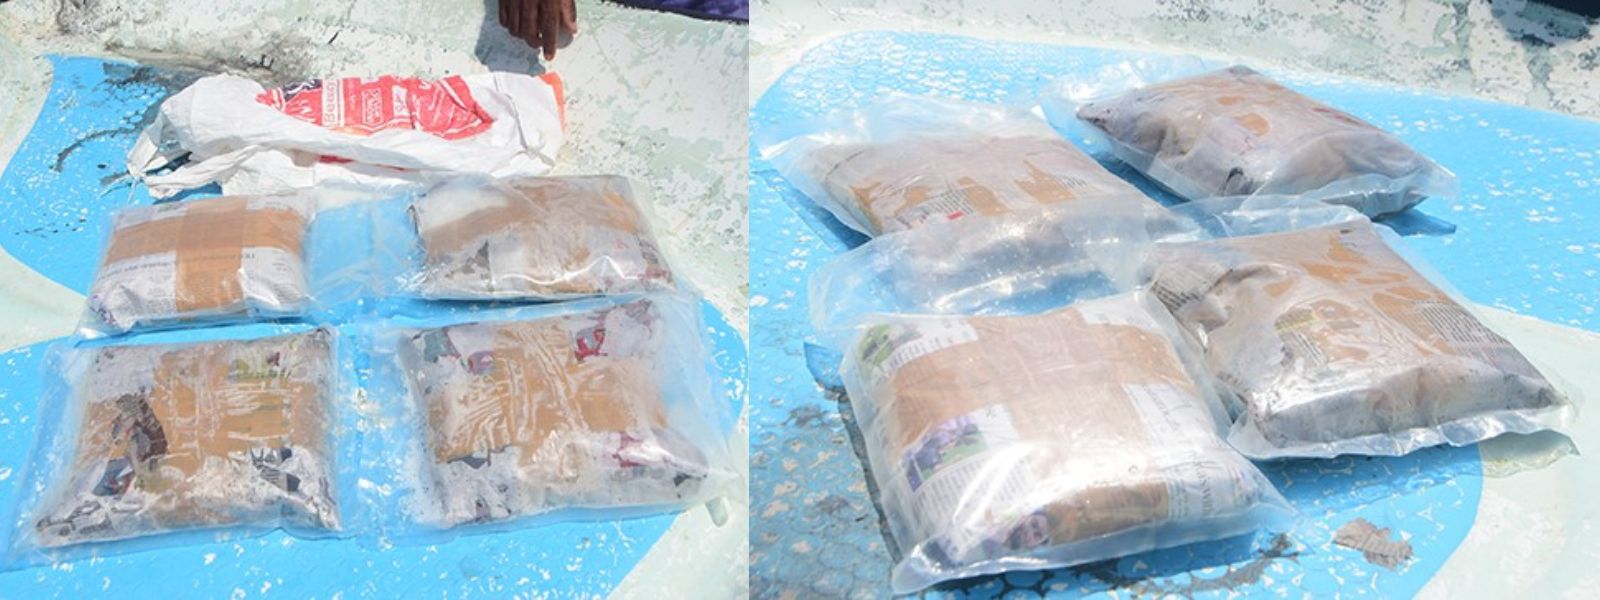 Rs. 67 Mn worth Crystal Meth seized in Talaimannar